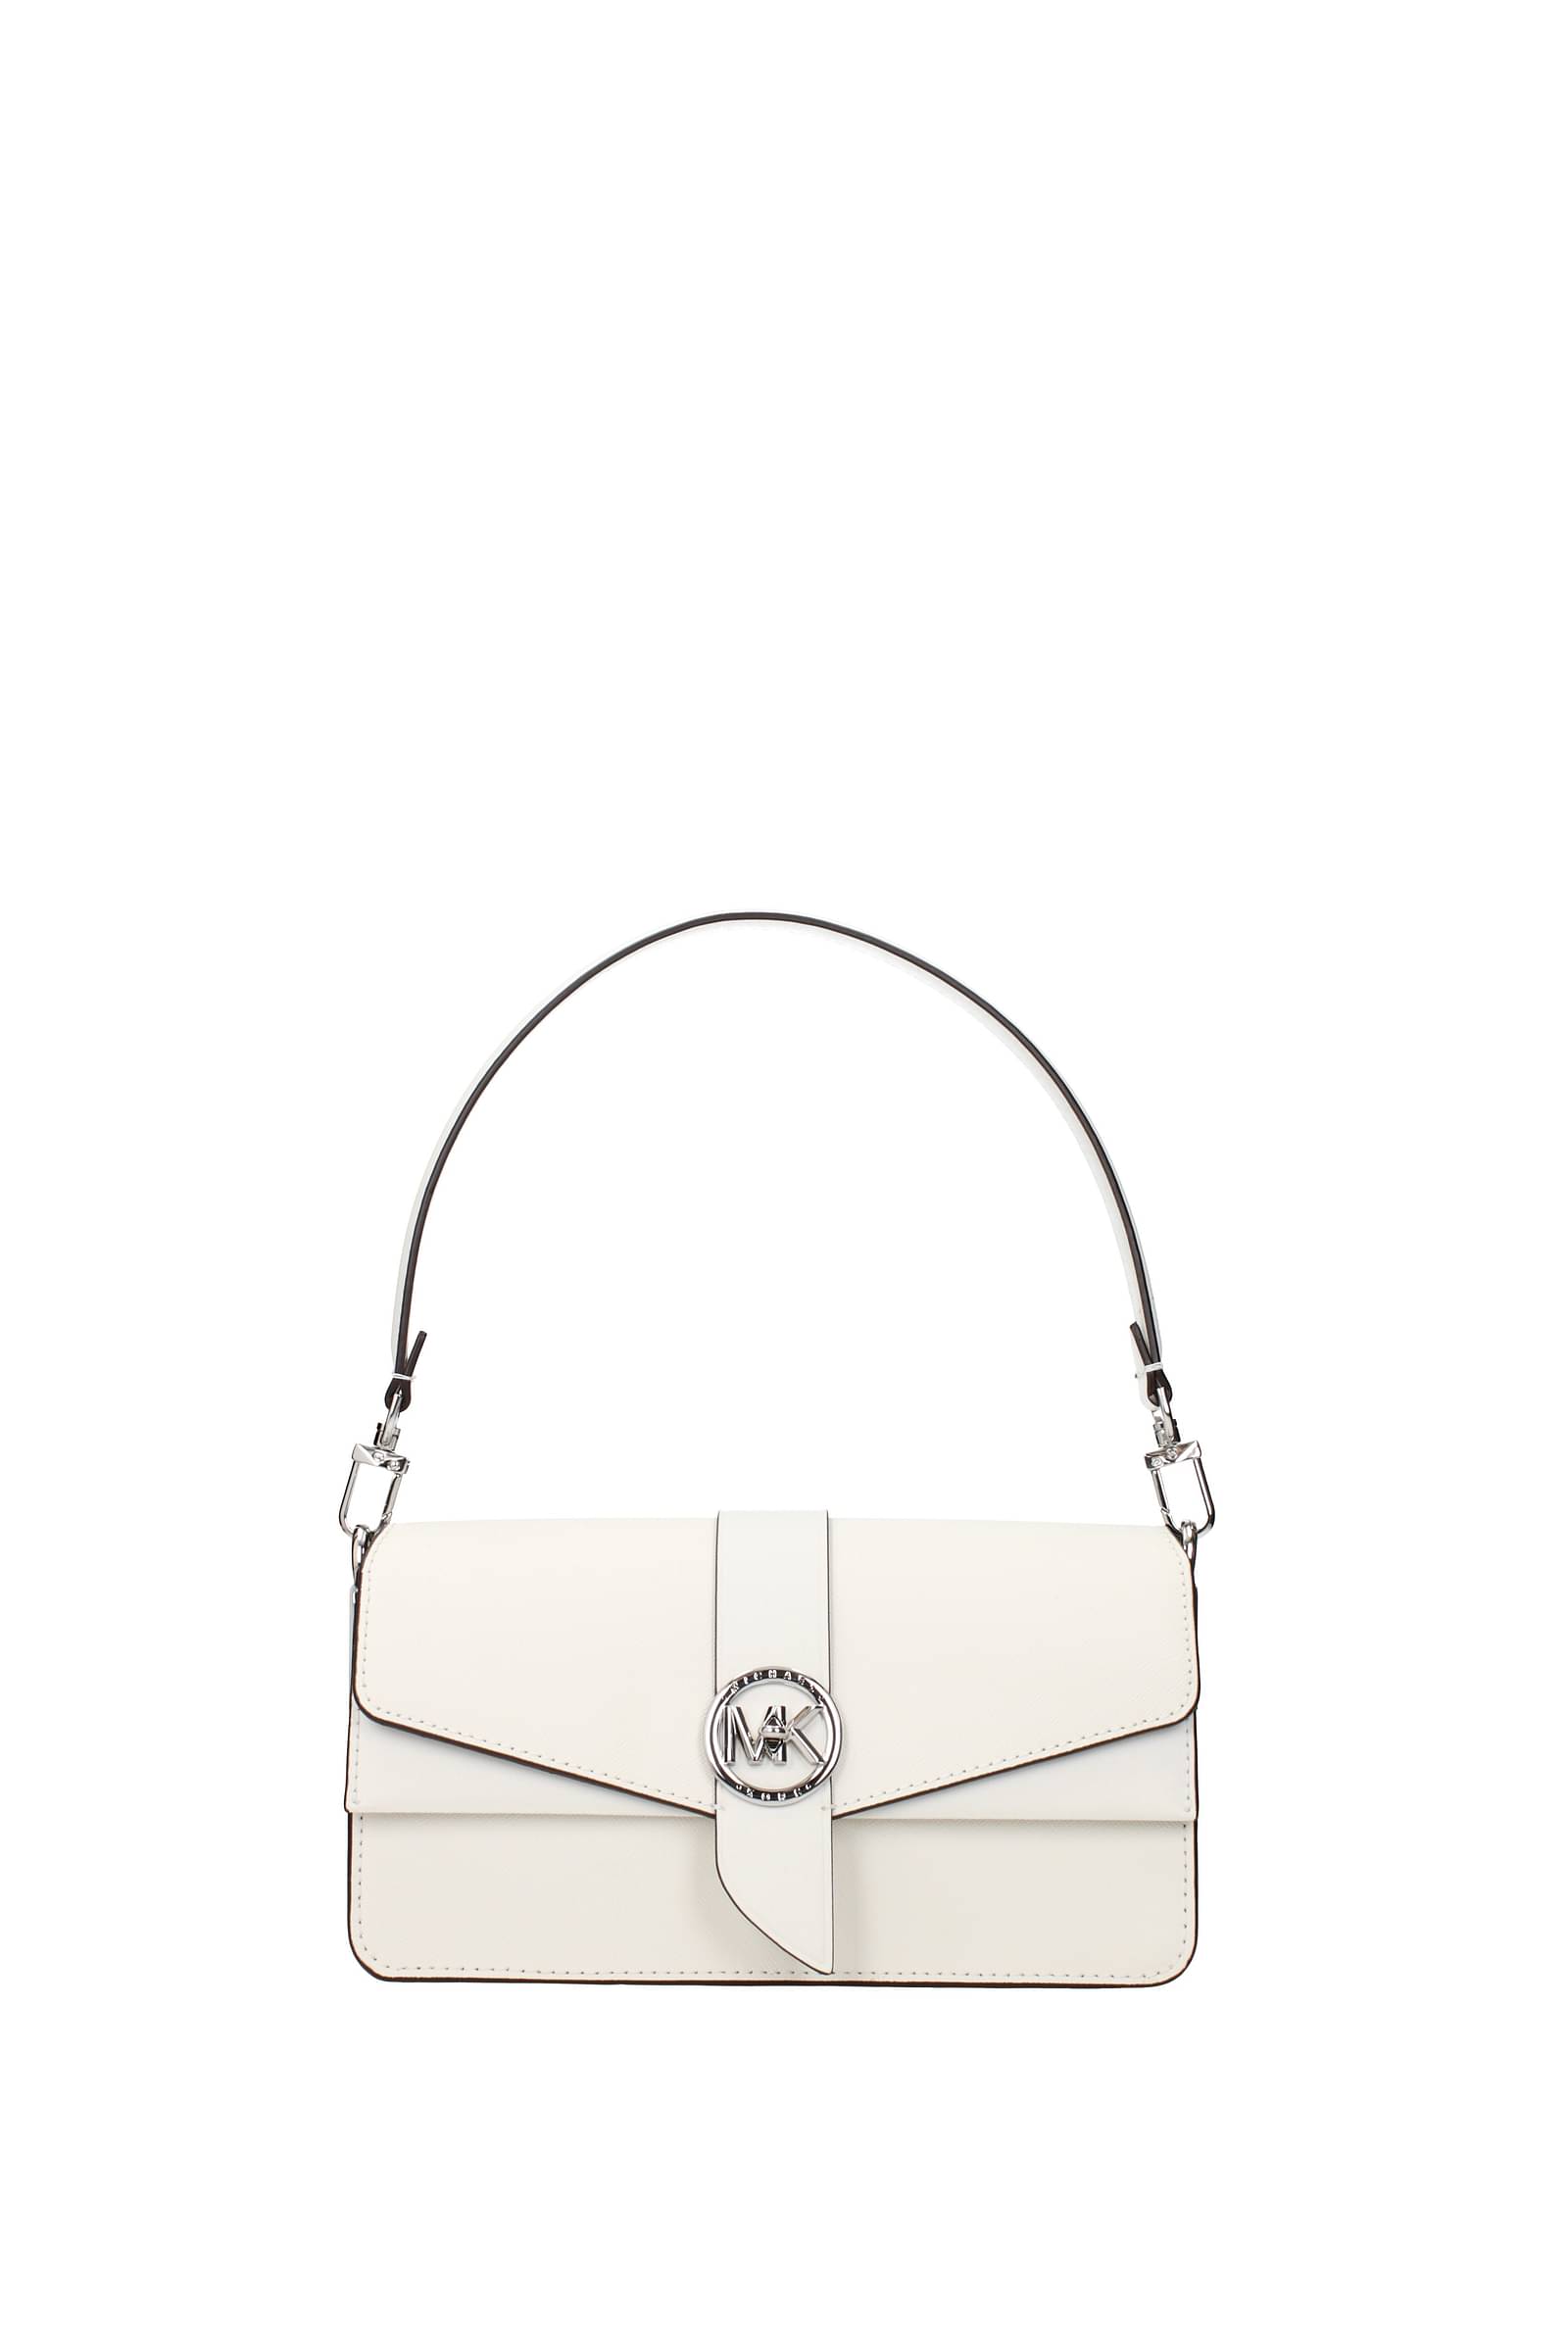 Buy Fancy Michael Kors Handbag For Girls (LAK123)